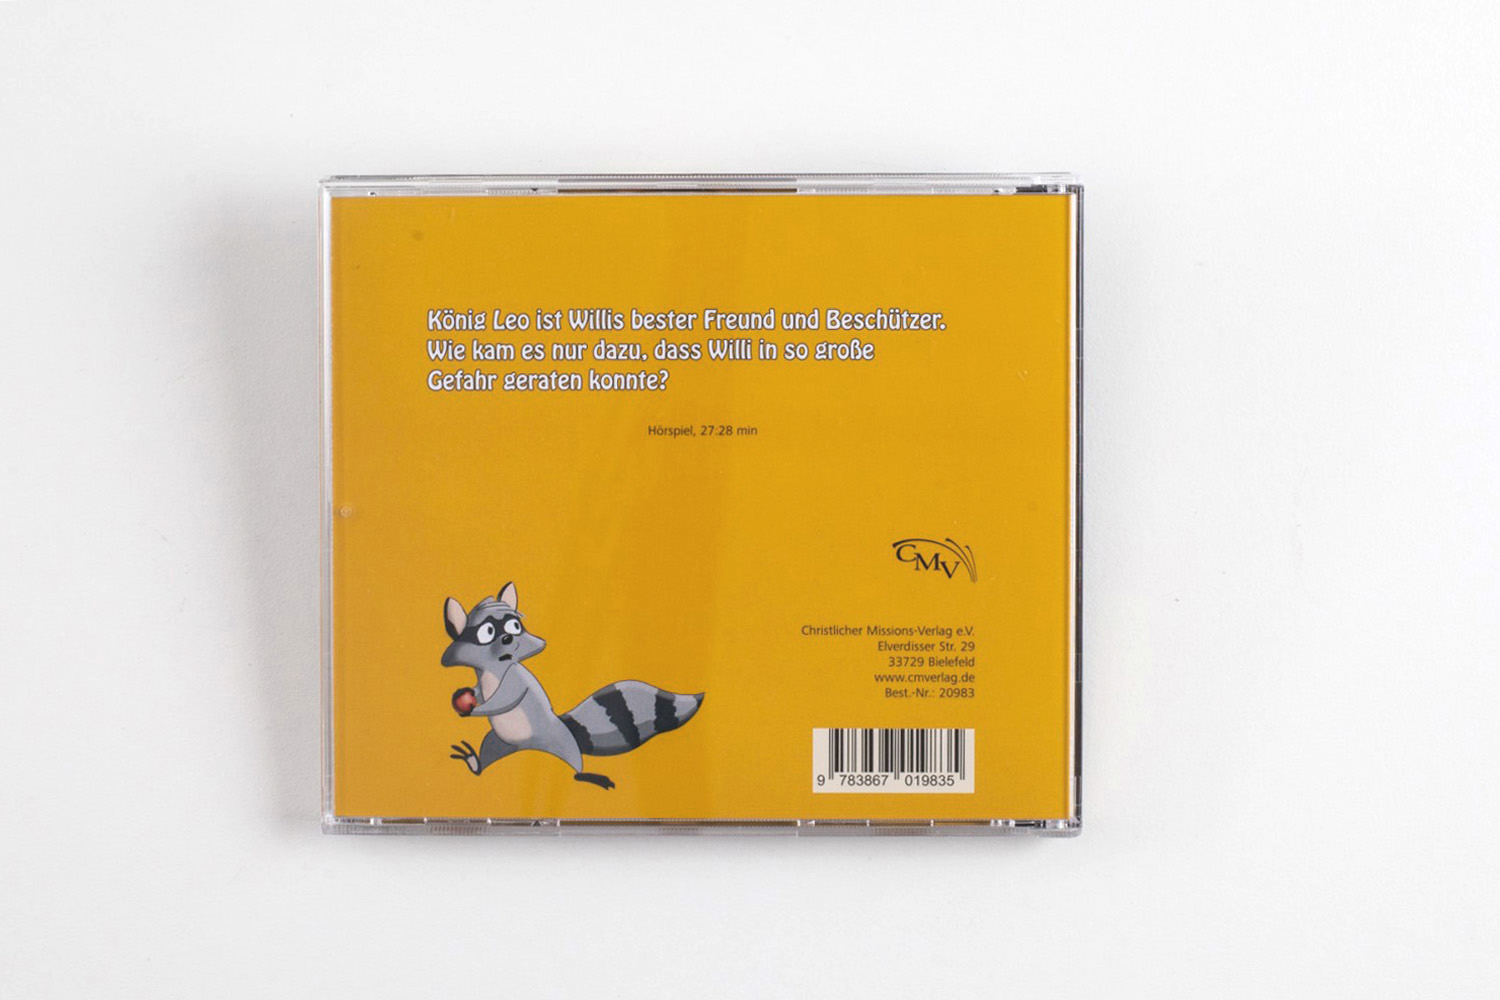 Willi Waschbär in Gefahr (4) - CD